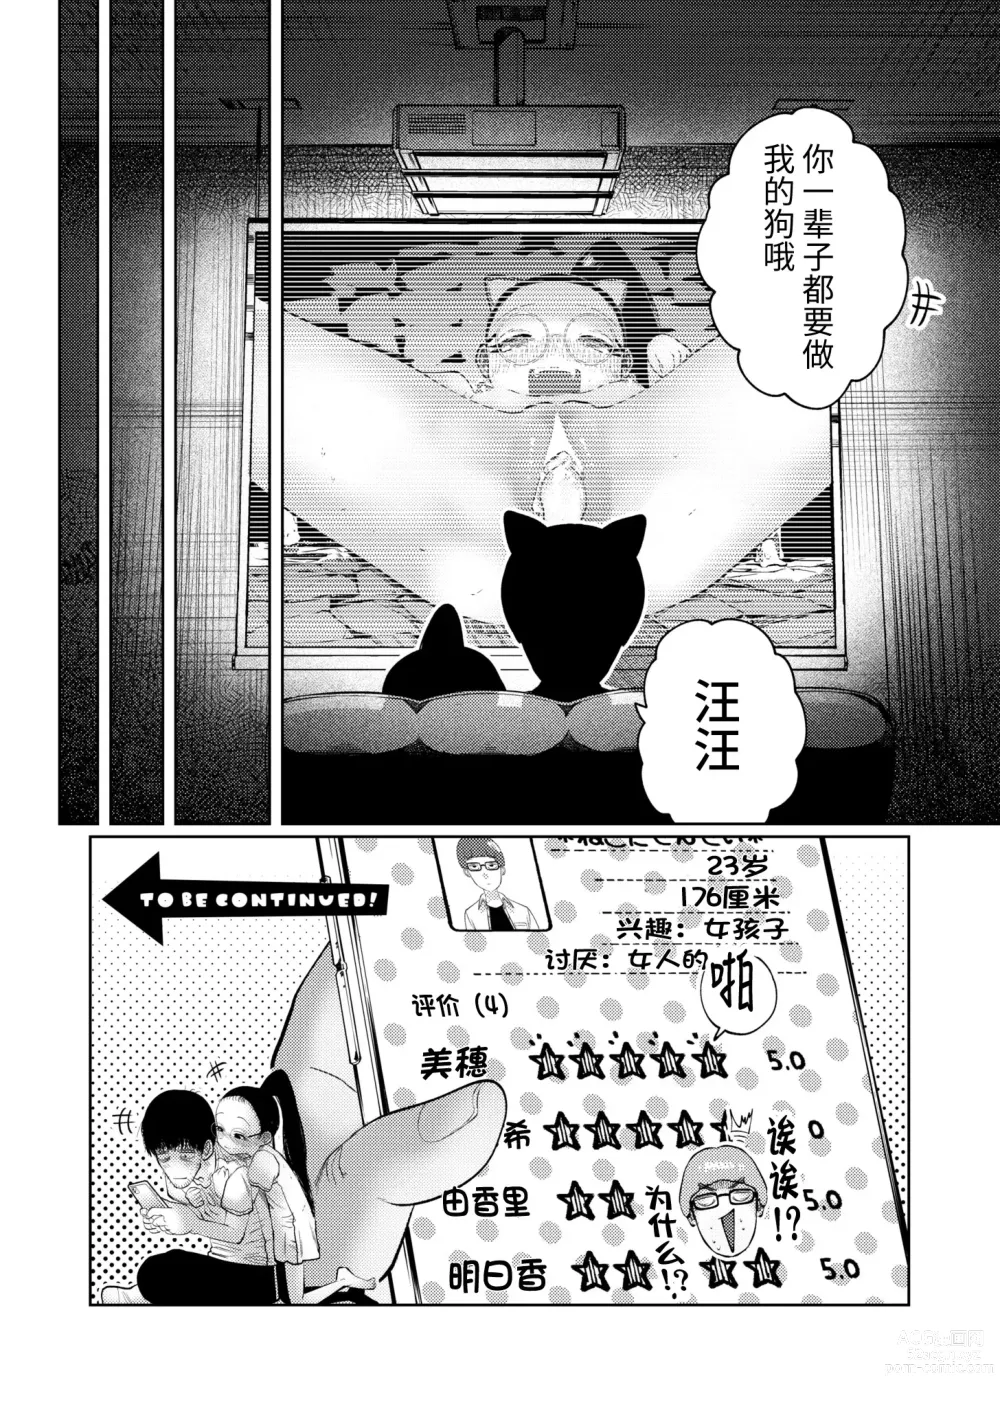 Page 118 of manga ねーうしとらうー! #1-4